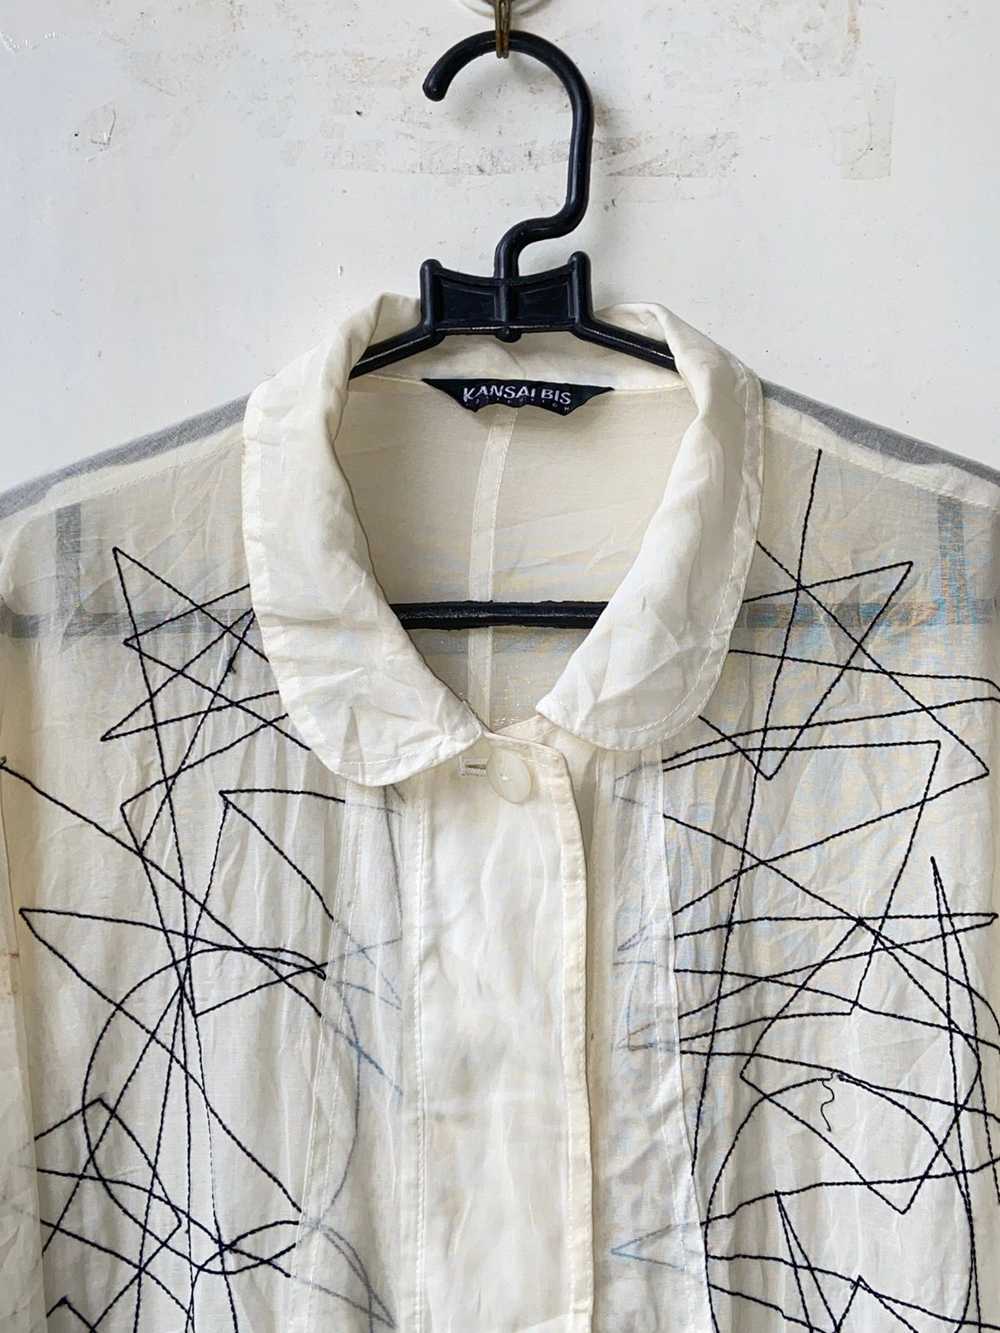 Kansai Yamamoto KANSAI BIS White Mesh Shirt - image 11